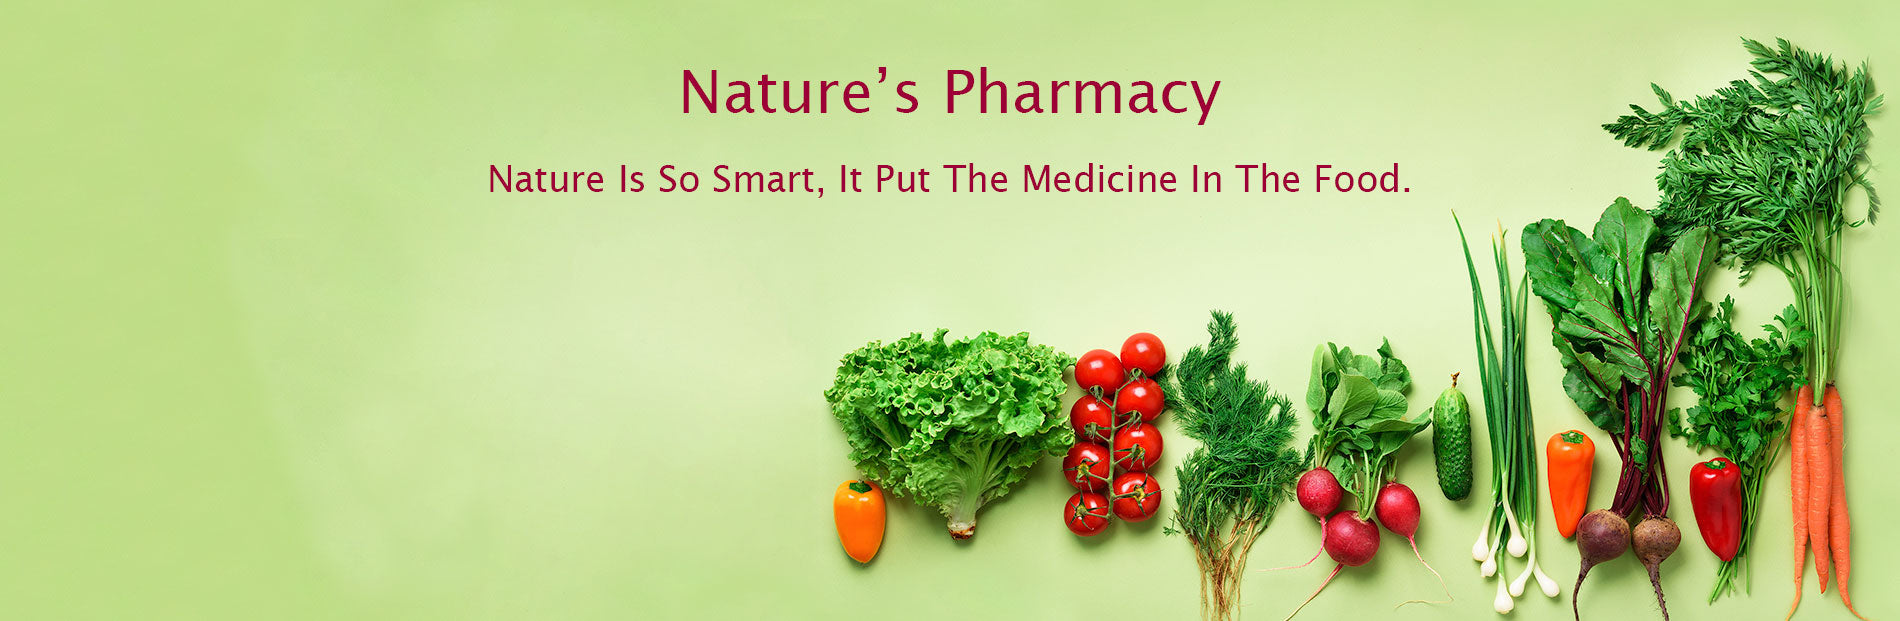 Life's Healthiest Nature's Pharmacy